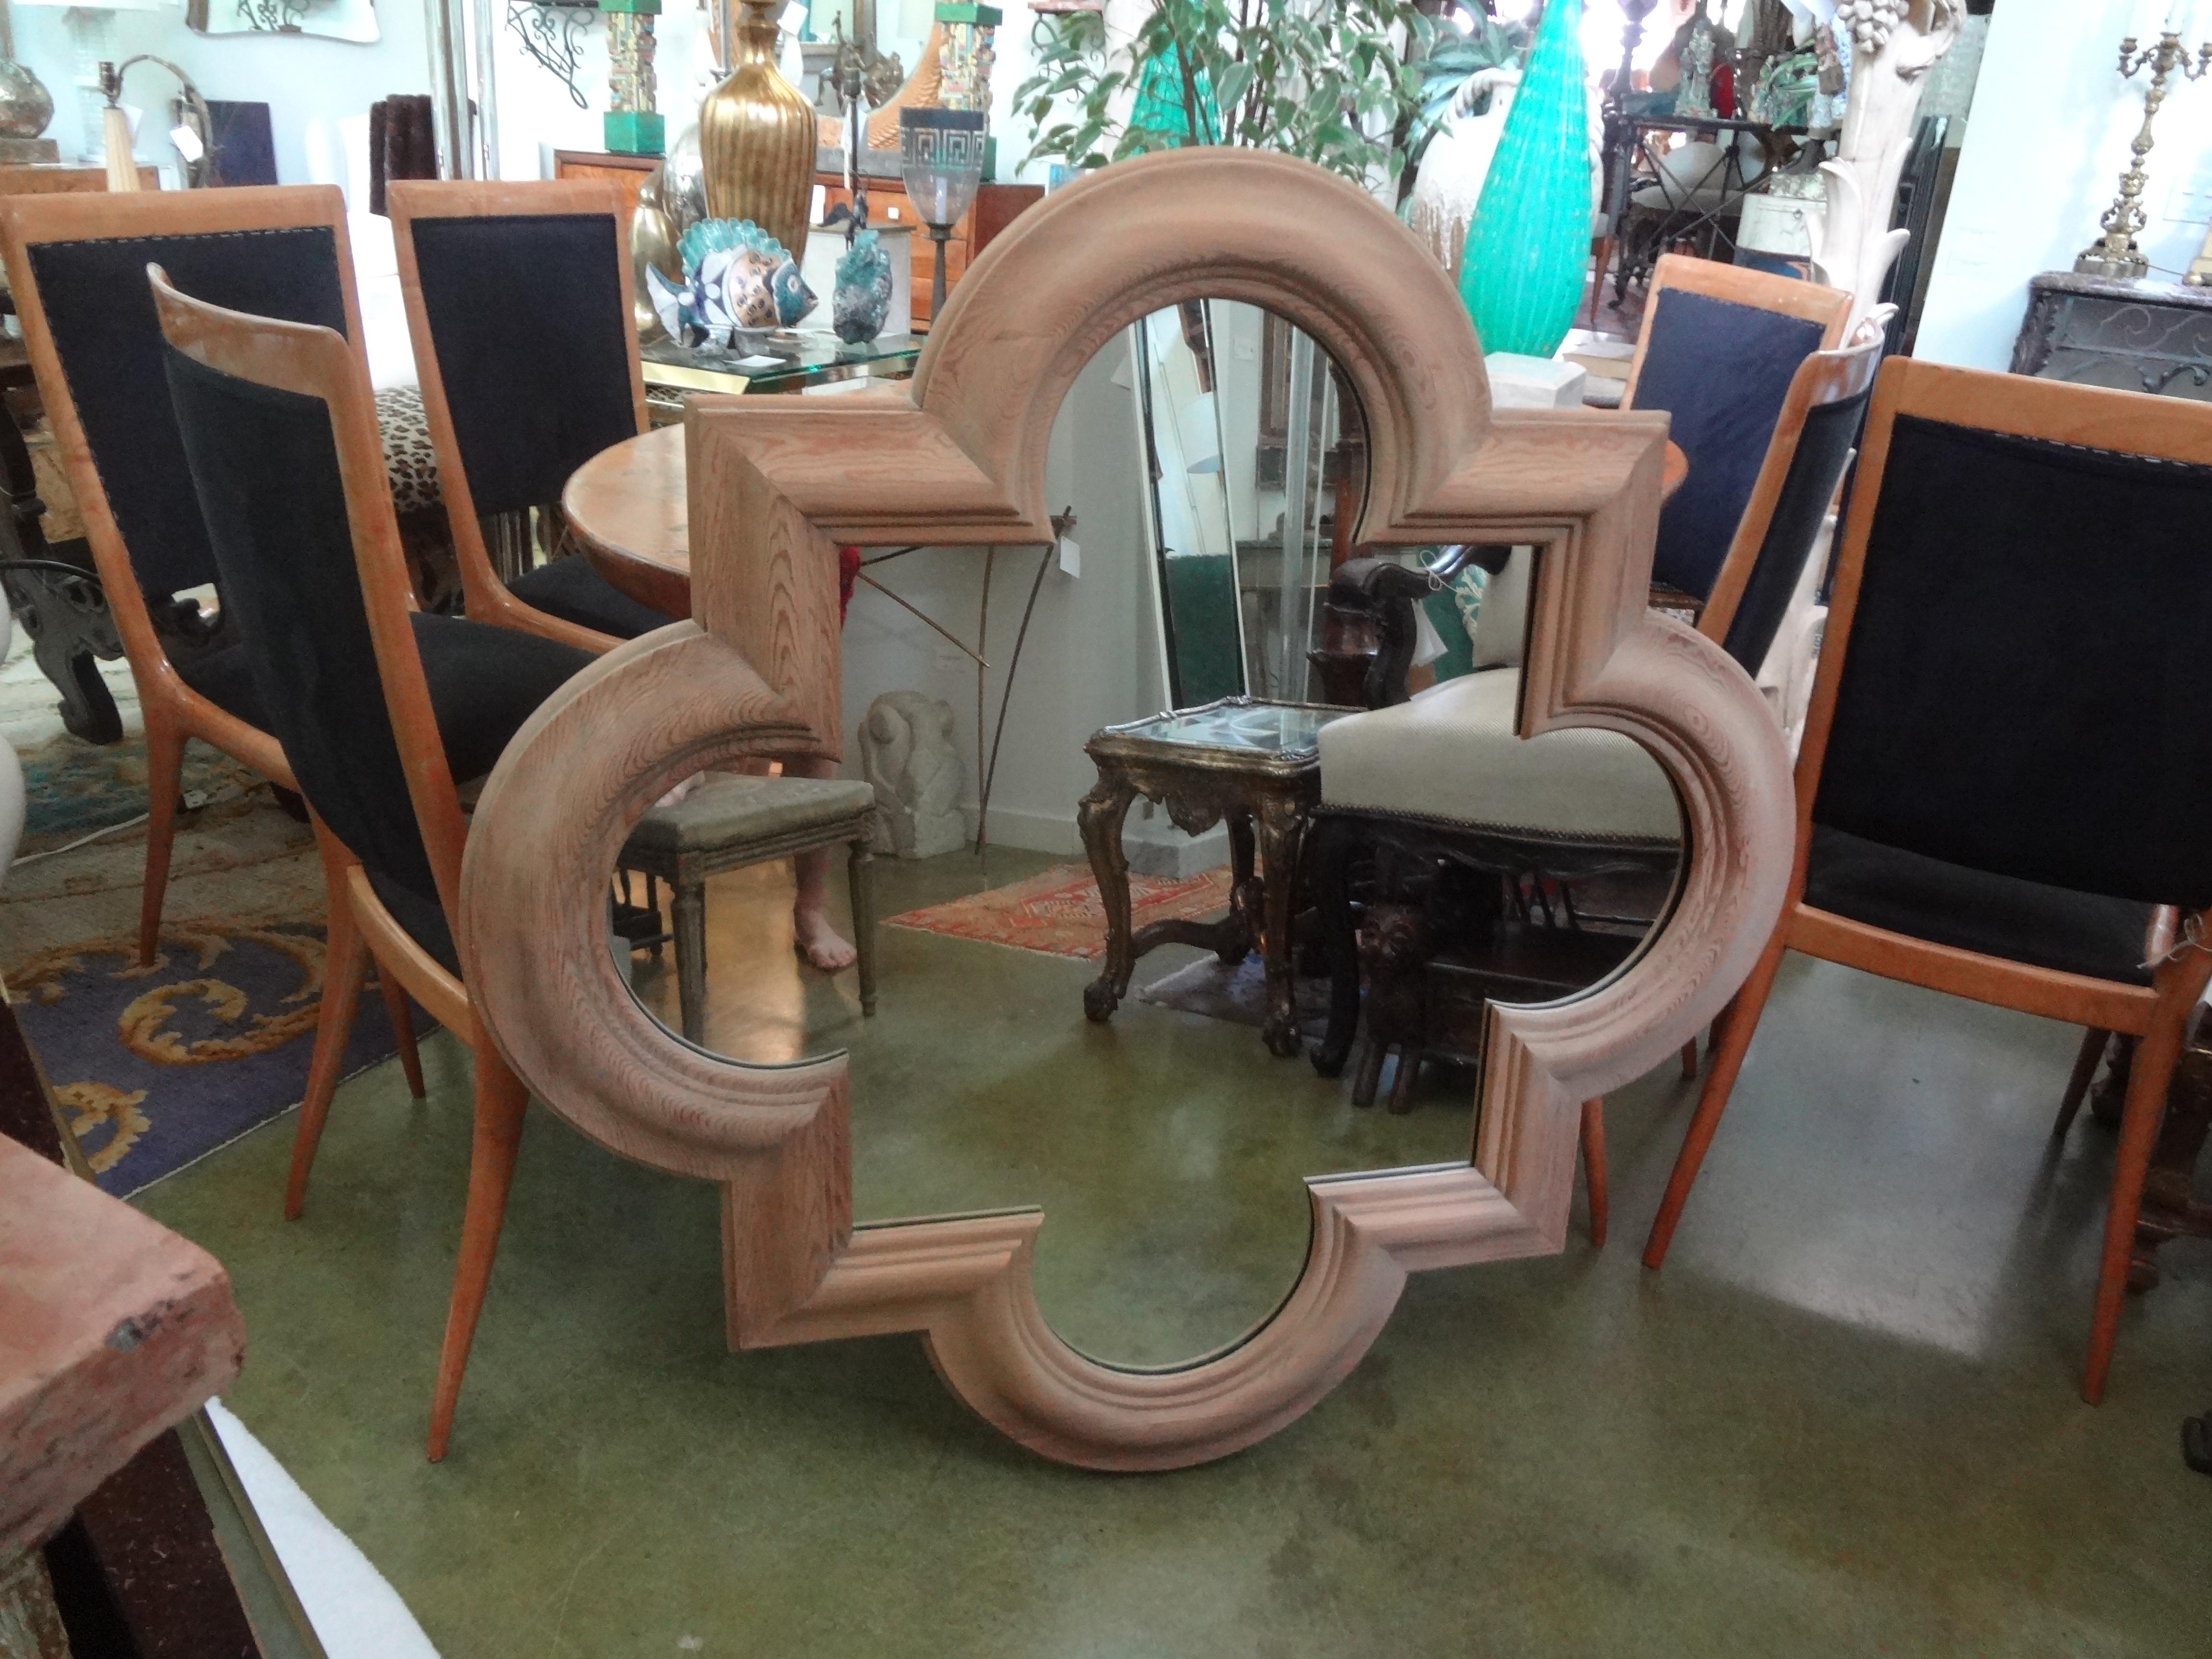 Grand miroir italien en bois quadrilobé.
Superbe grand miroir italien quadrilobé en chêne massif. Ce miroir en chêne magnifiquement sculpté date des années 1970 et est en très bon état. Ce miroir italien vintage pourrait être doré, cérusé, laqué ou